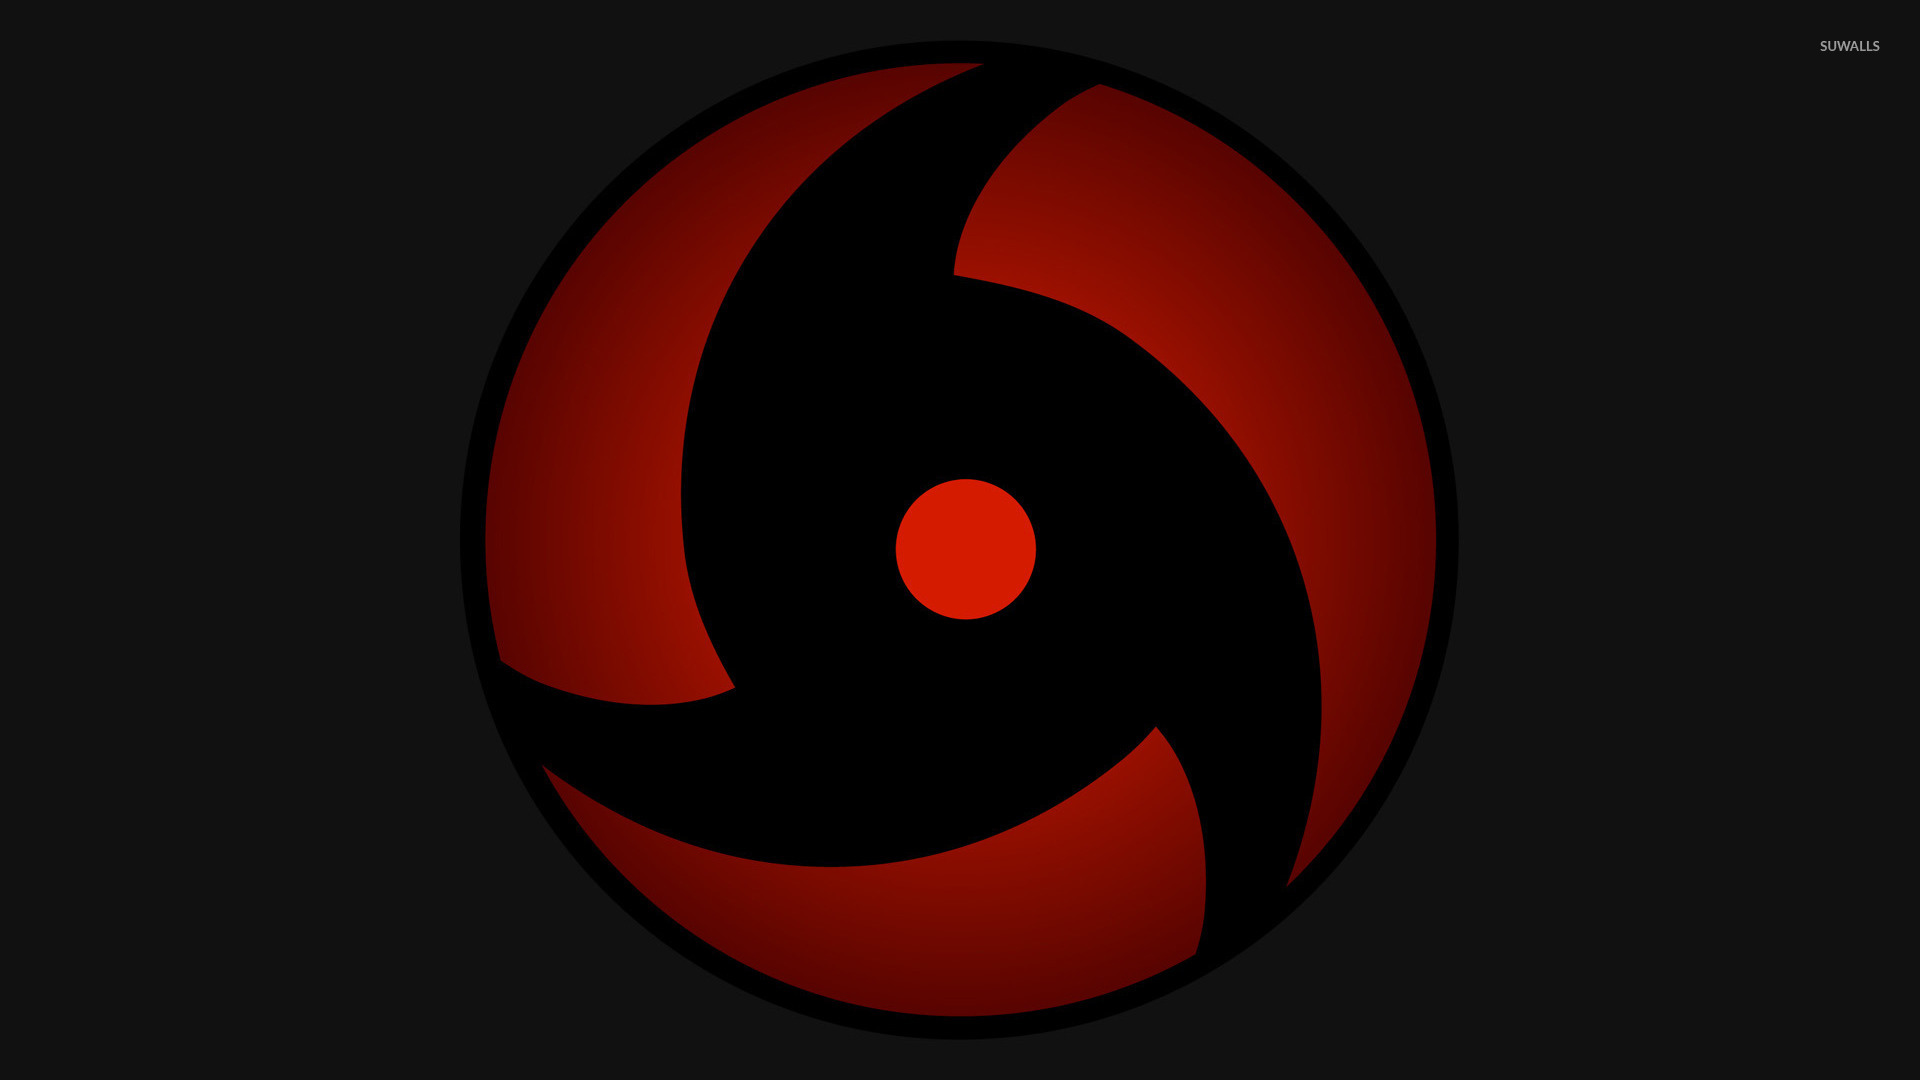 sharingan wallpaper,red,circle,symbol,logo,graphics